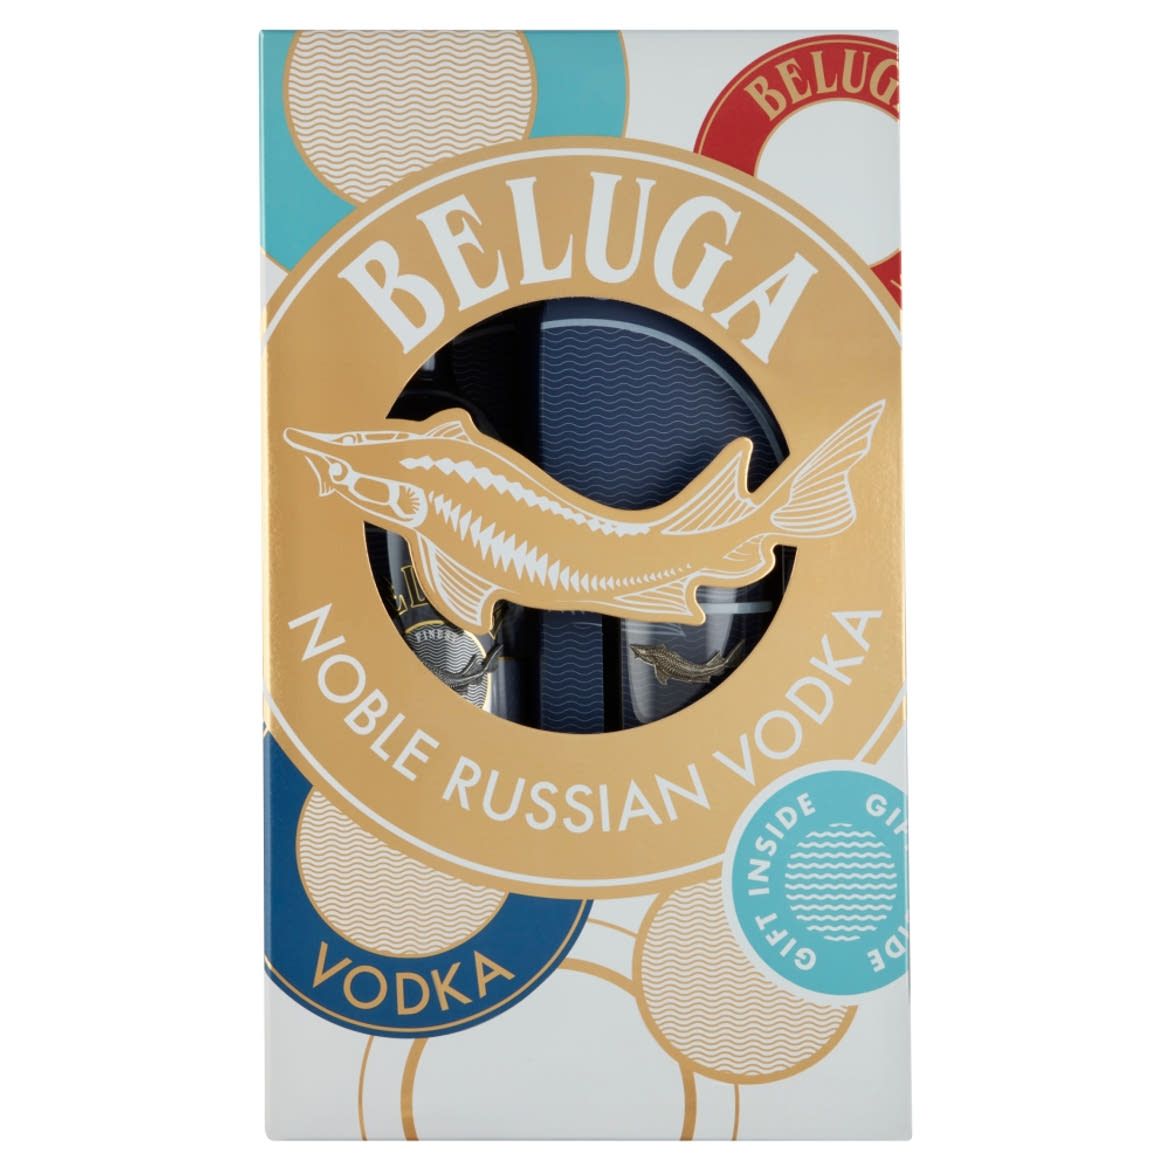 Beluga Noble prémium orosz vodka + 1 pohár díszdobozban 40%